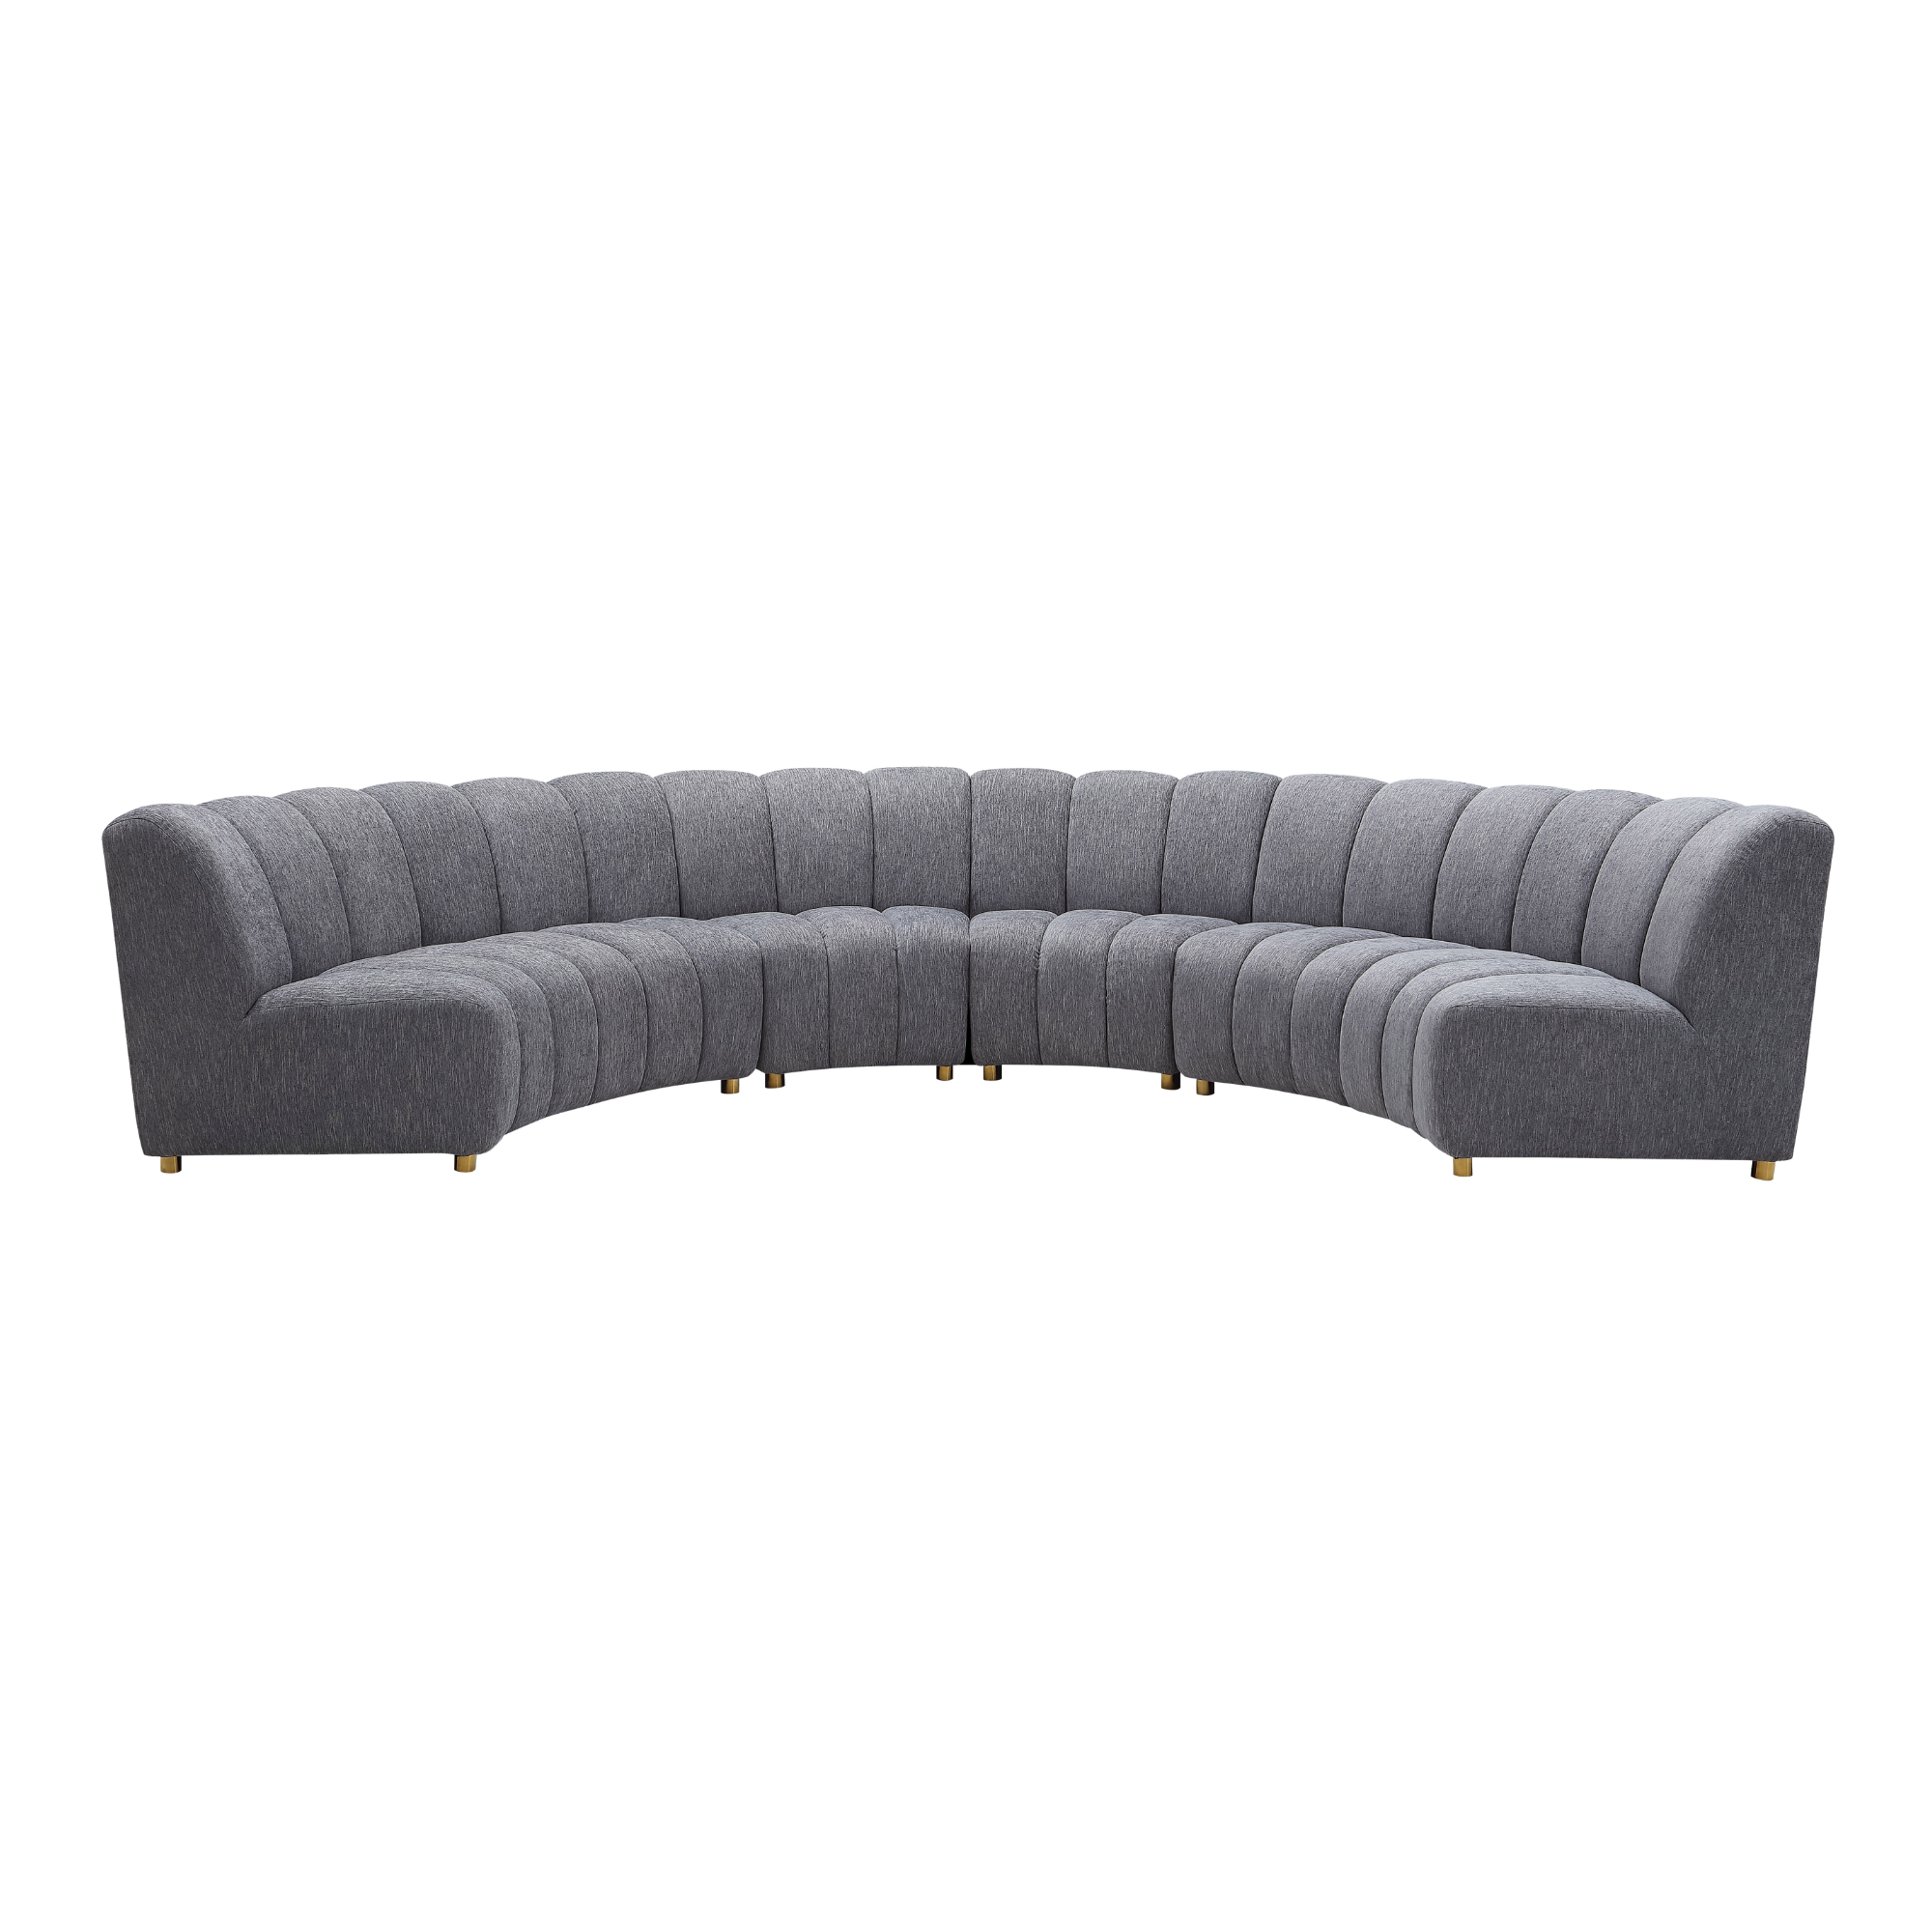 Object 2301 Semi-Circle Sofa in Gray Velvet